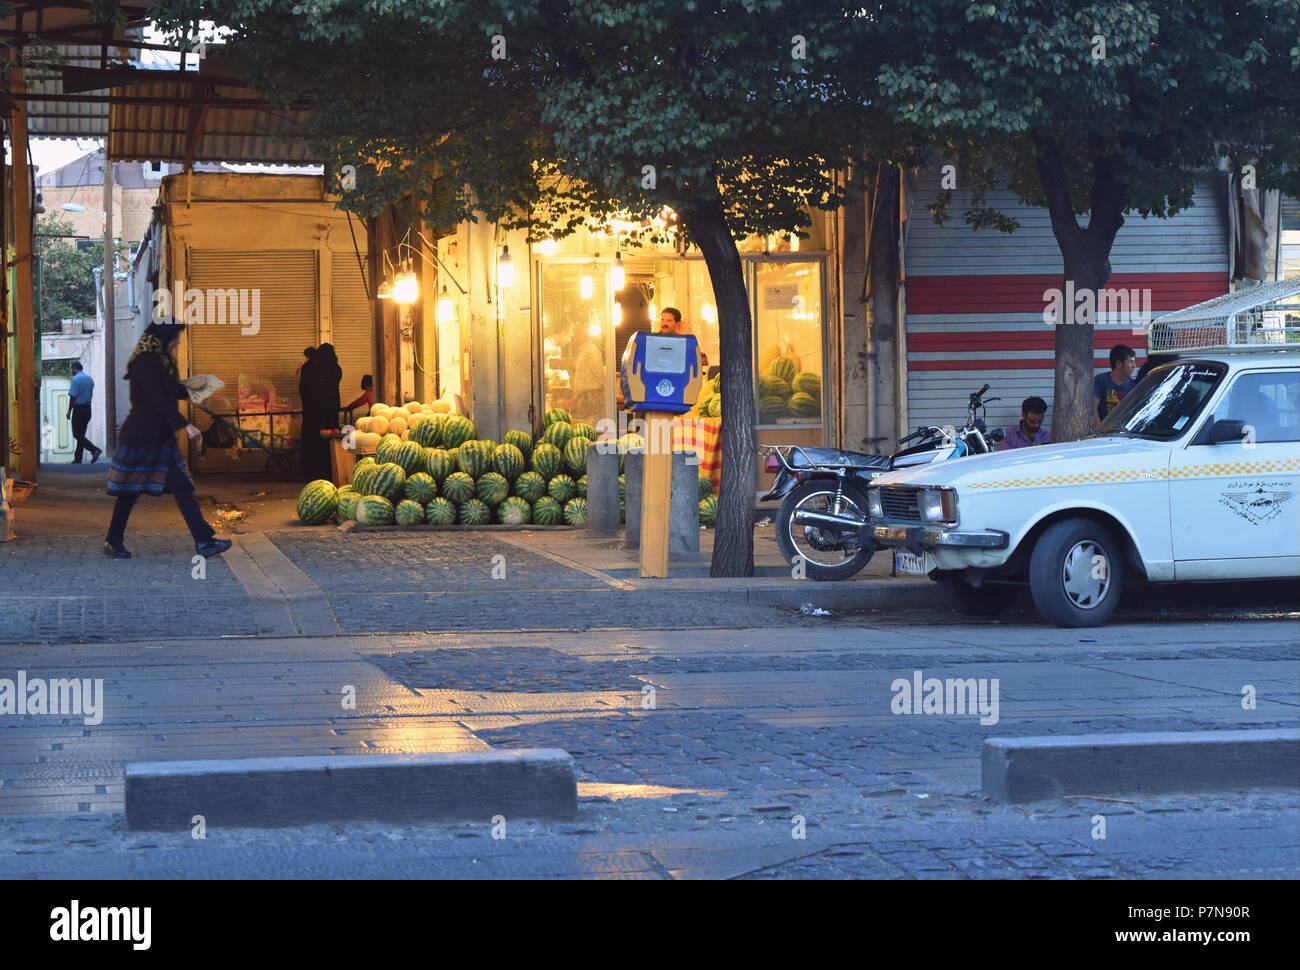 Vue sur la rue des marchés et la vie quotidienne de personnes en Iran Banque D'Images